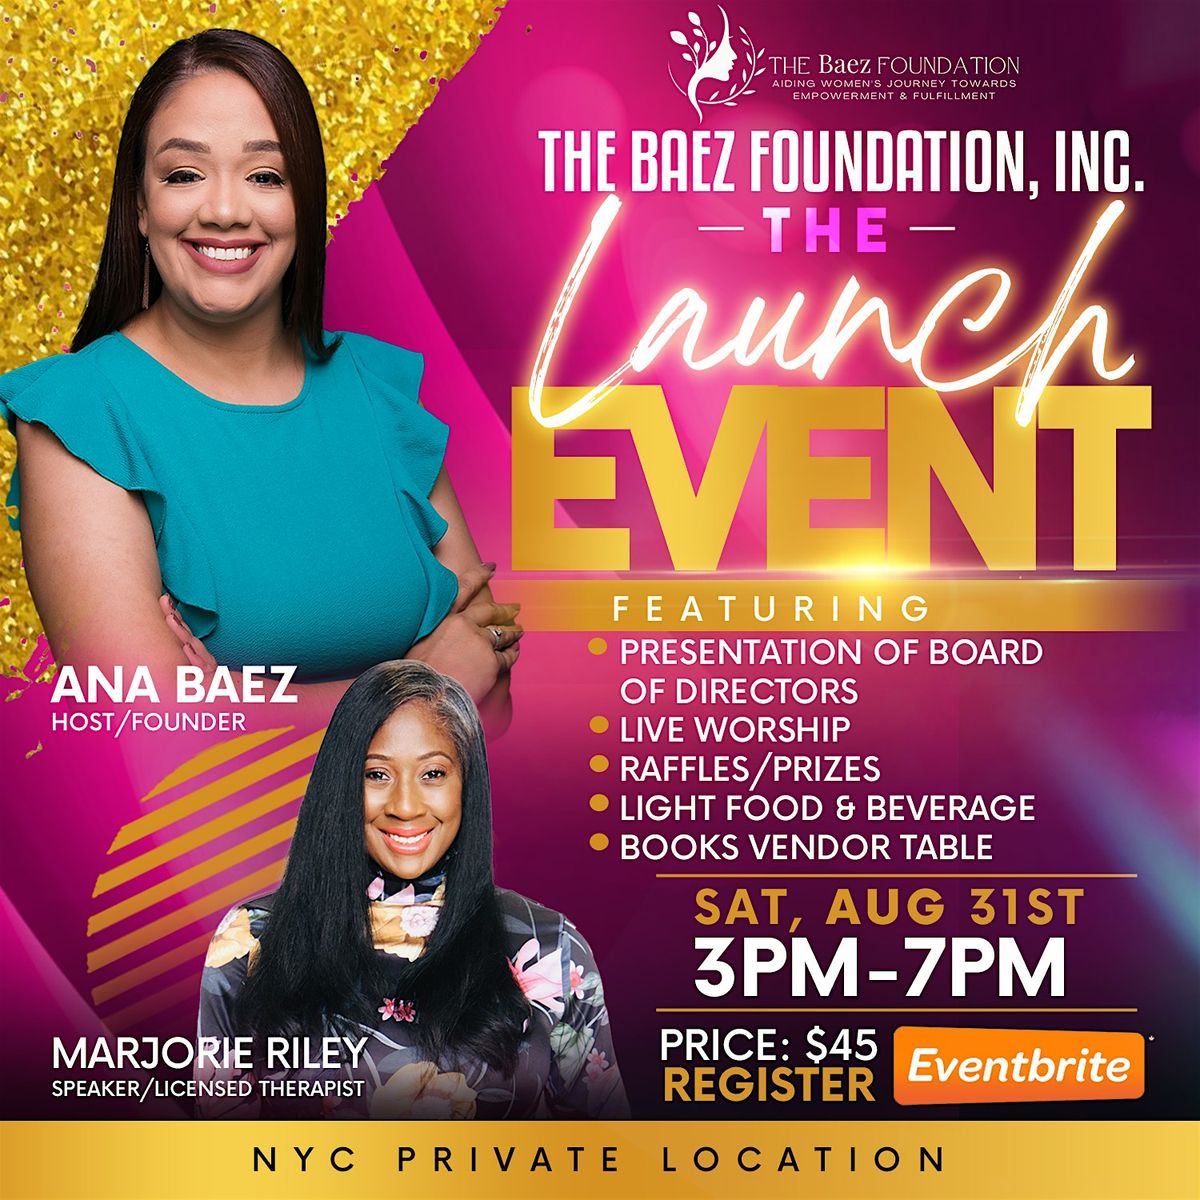 The Baez Foundation, Inc. Launch Event